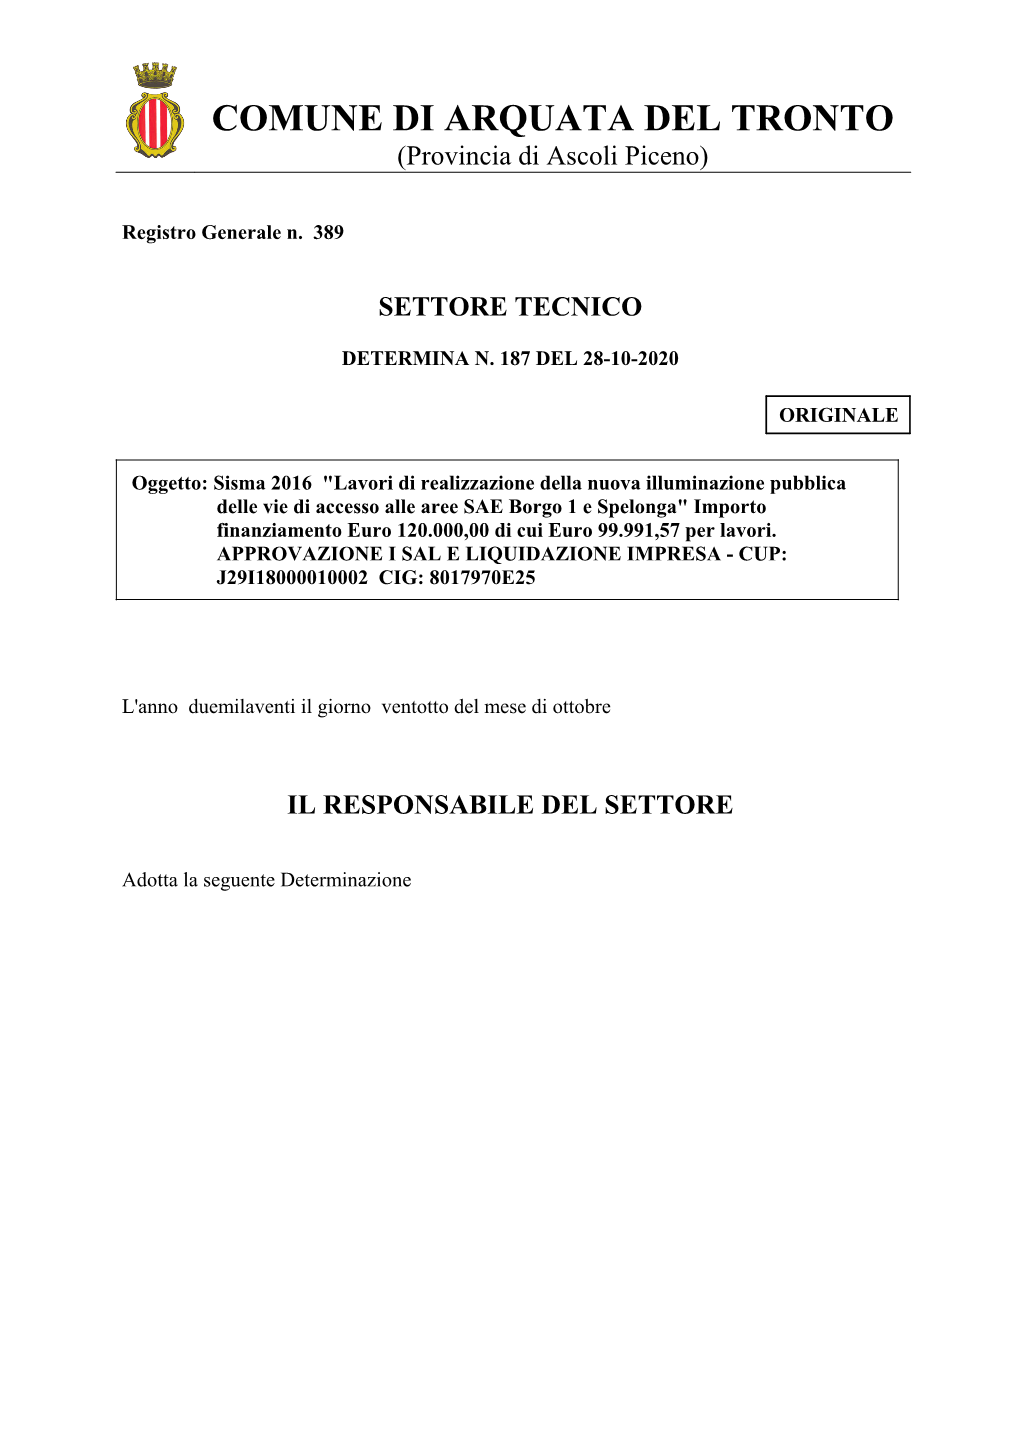 Page 1 COMUNE DI ARQUATA DEL TRONTO (Provincia Di Ascoli